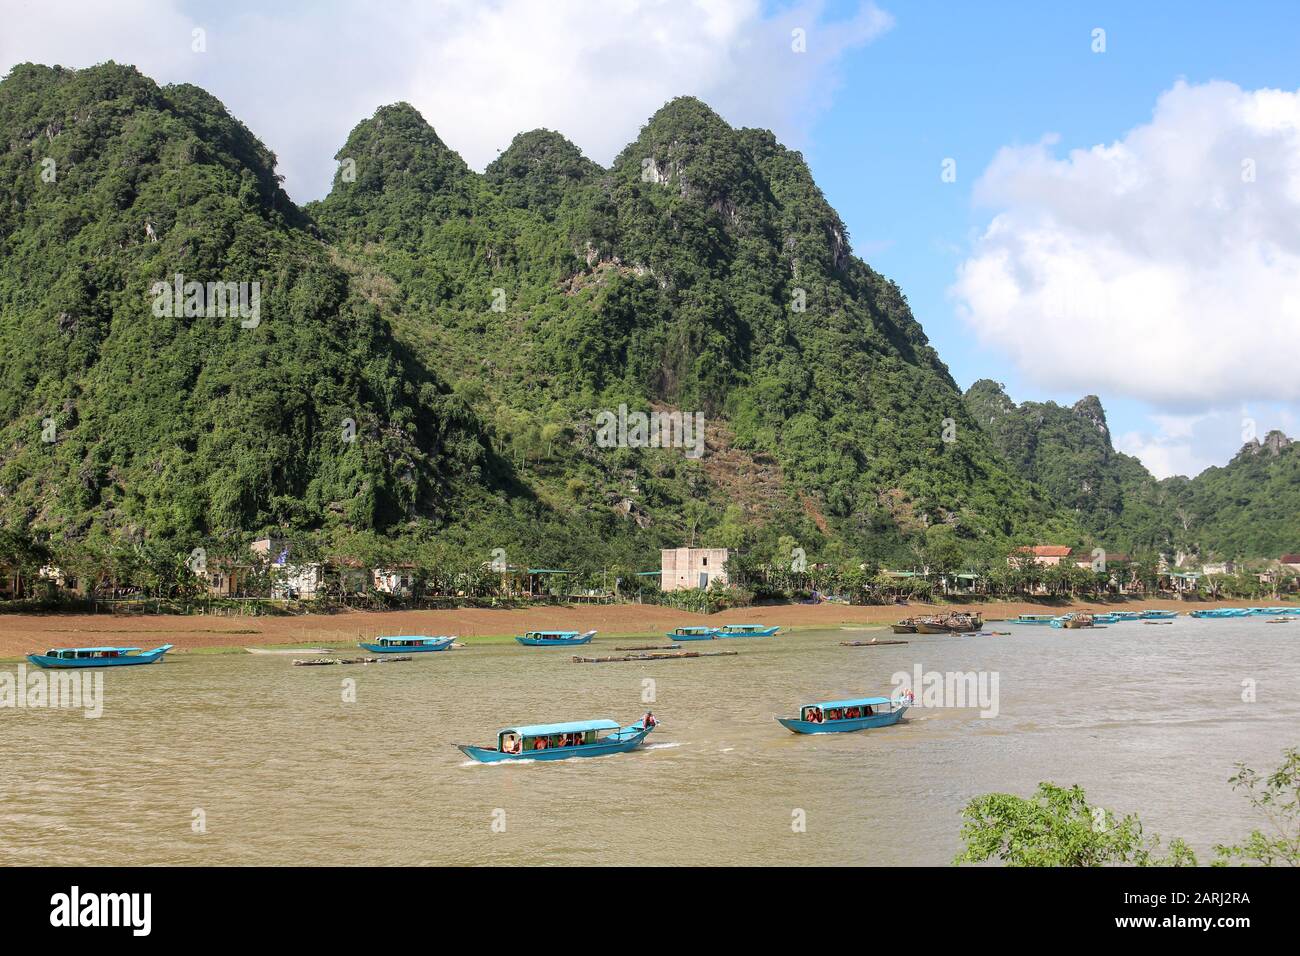 The beautiful Phong Nha Ke Bang National Park in central Vietnam Stock Photo